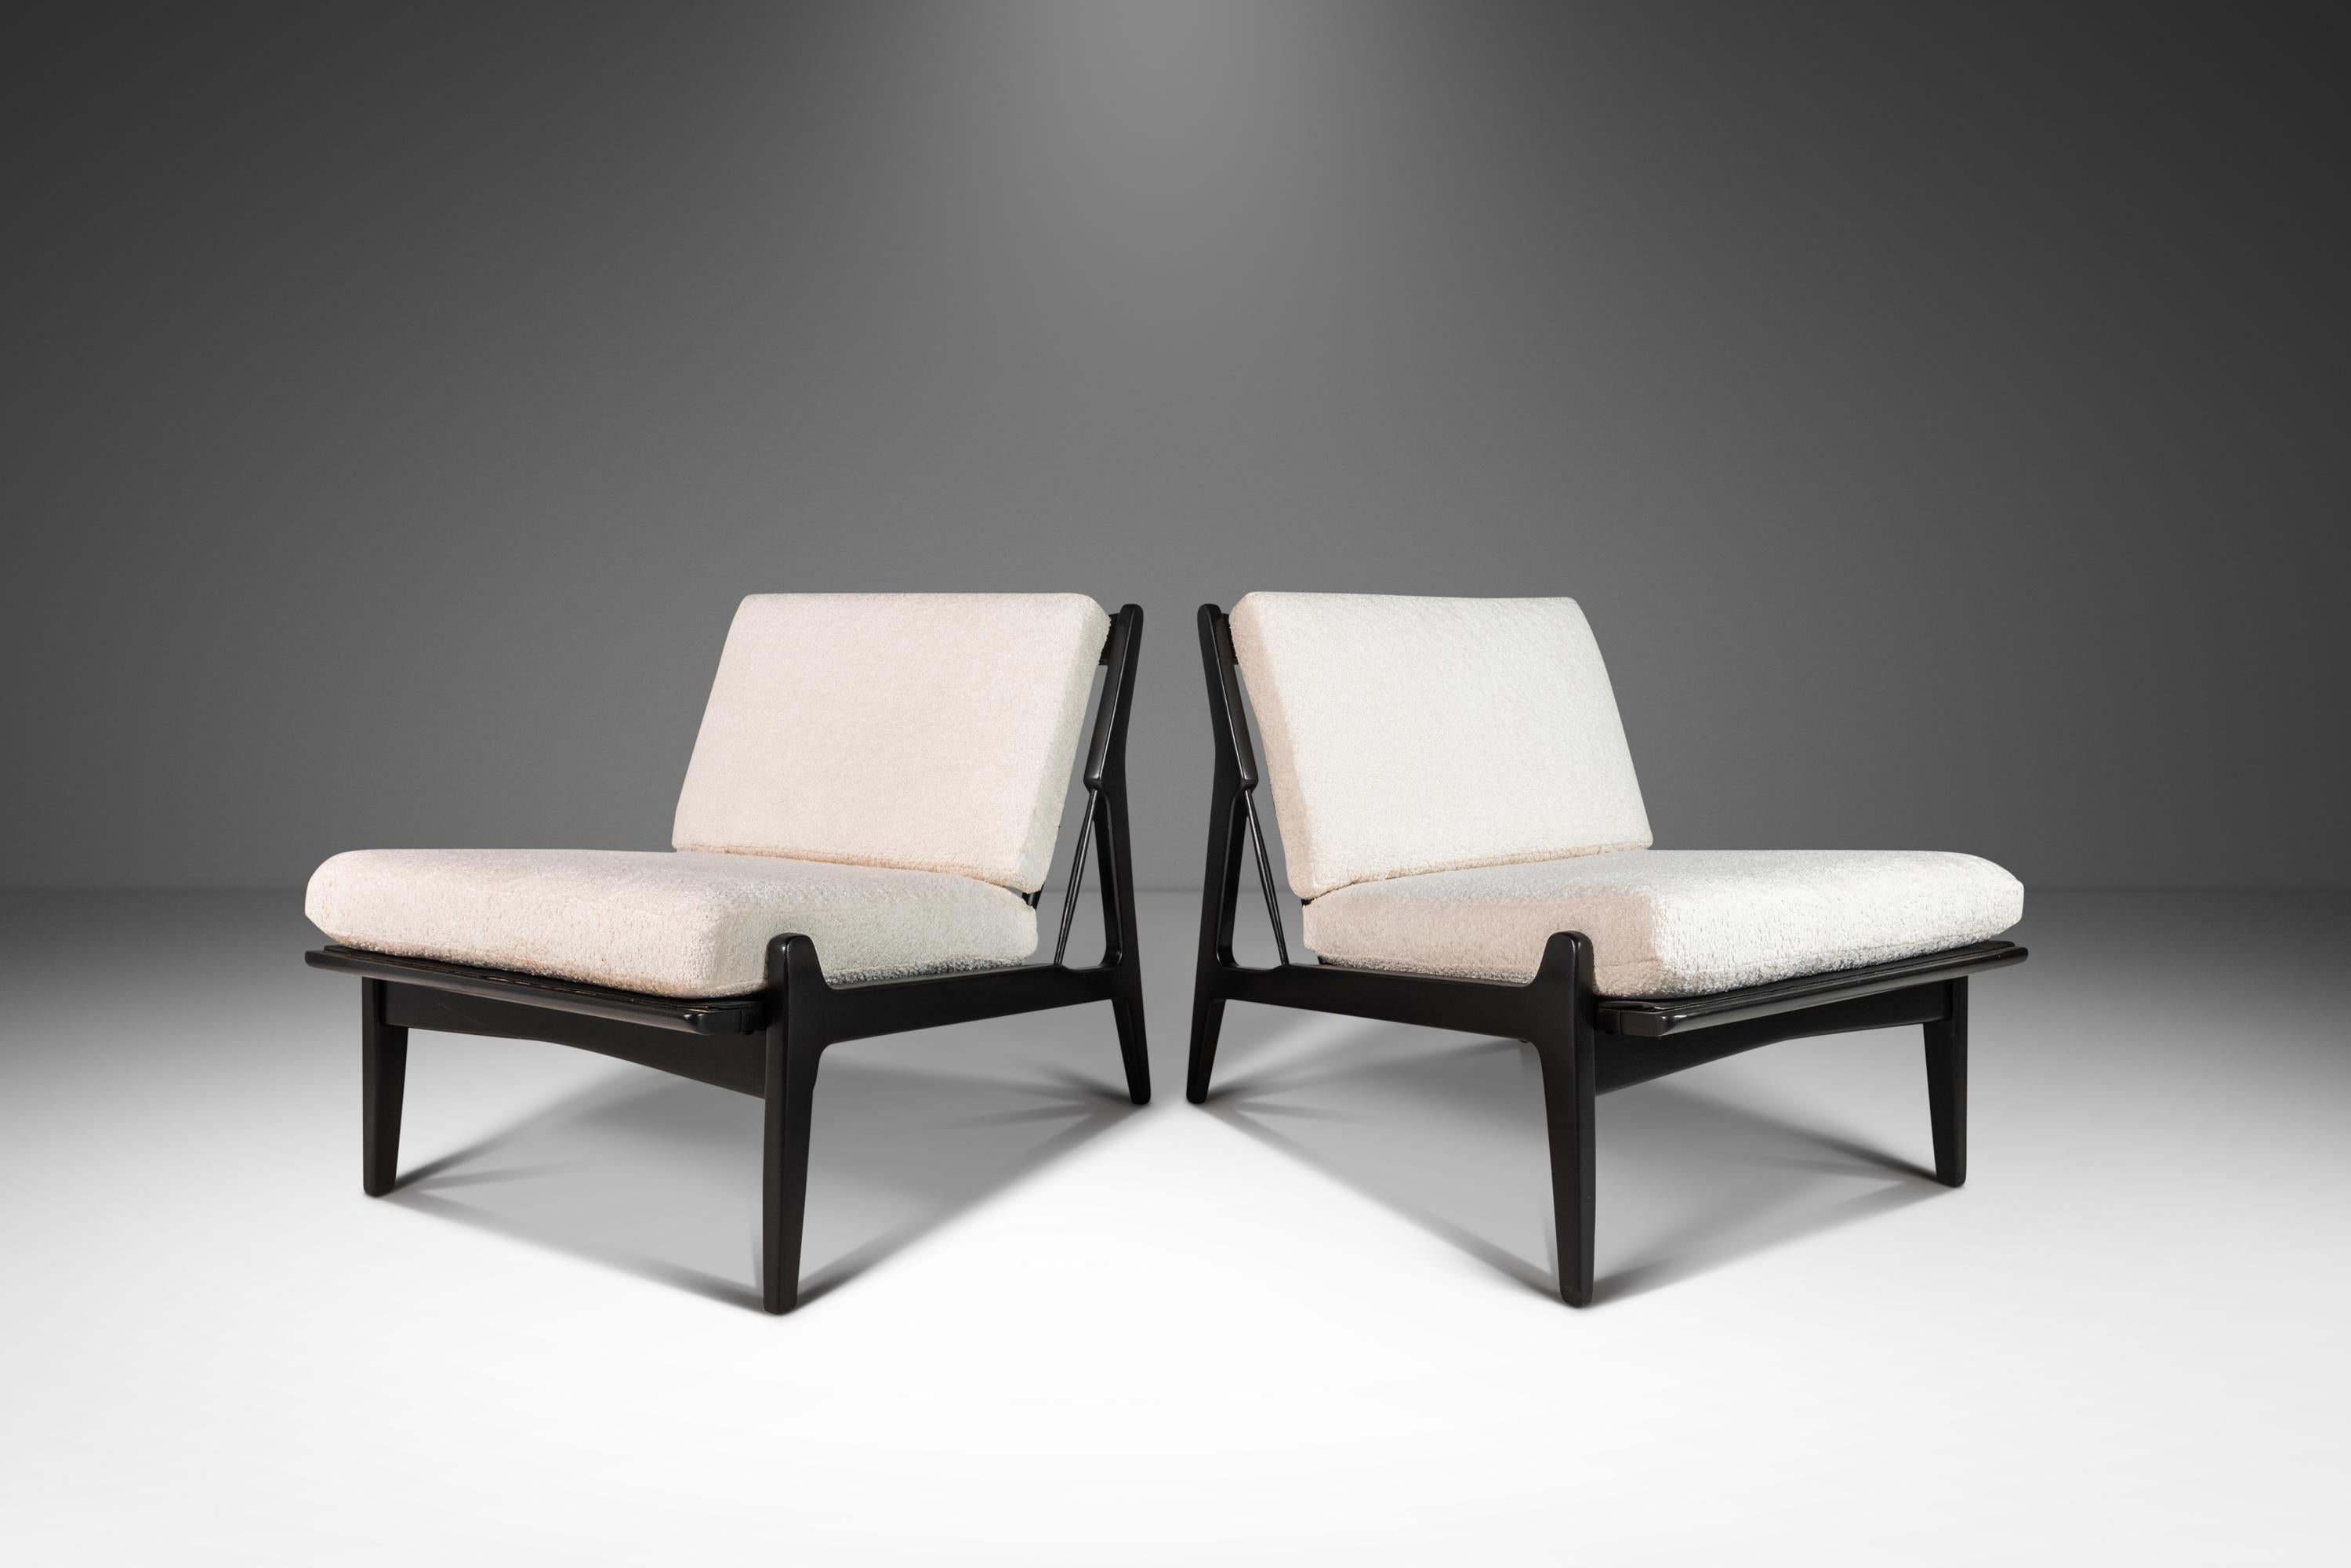 Conçu par l'artisan danois visionnaire Ib Kofod Larsen au début des années 1950, ce modèle de chaise précède sa chaise 